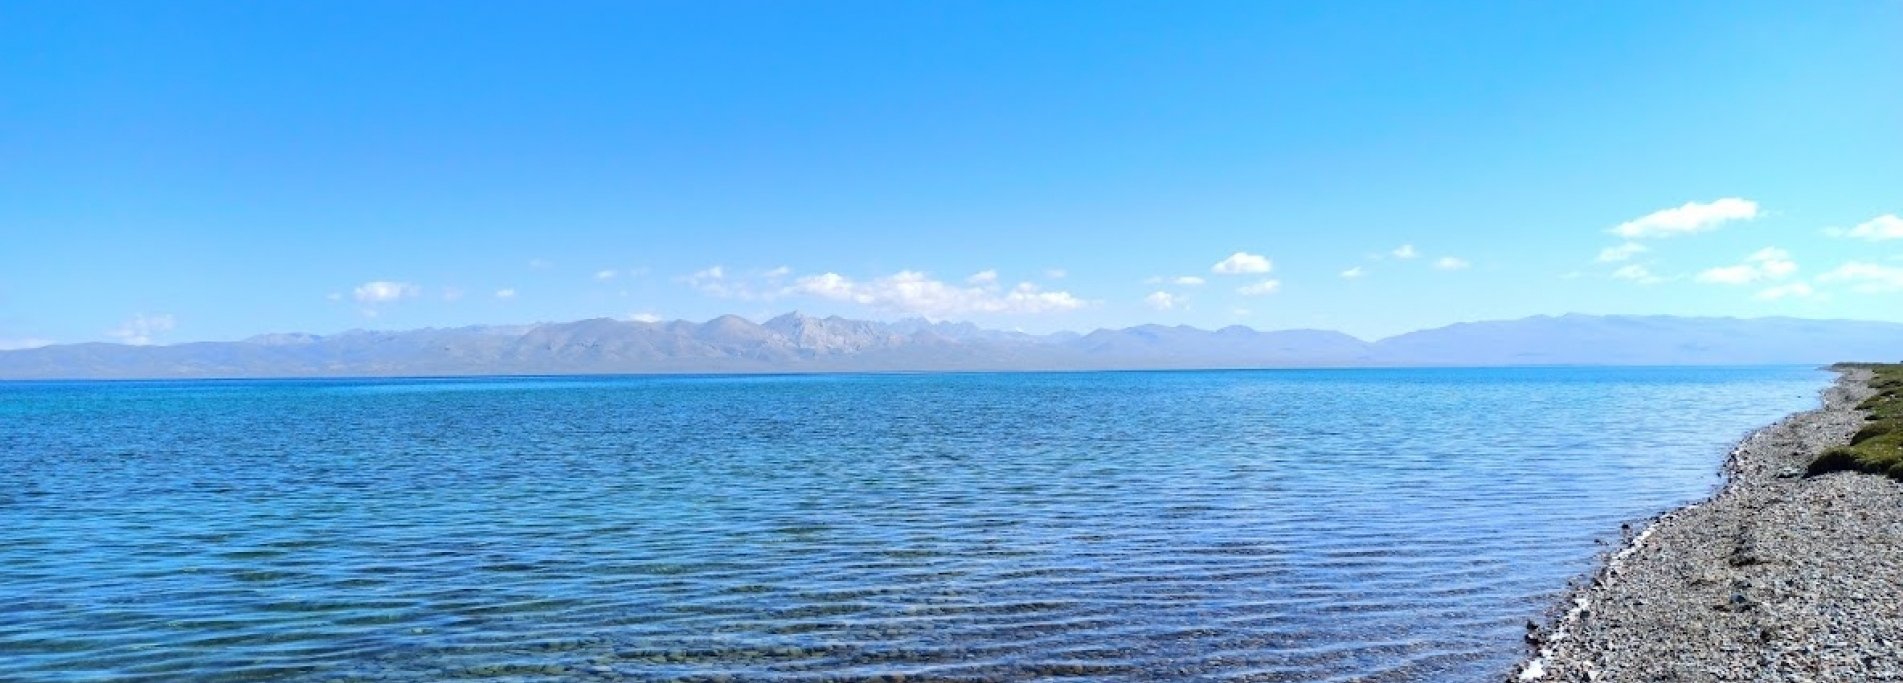 5 дней в Киргизии  - Озеро Иссык-Куль и Сон-Куль